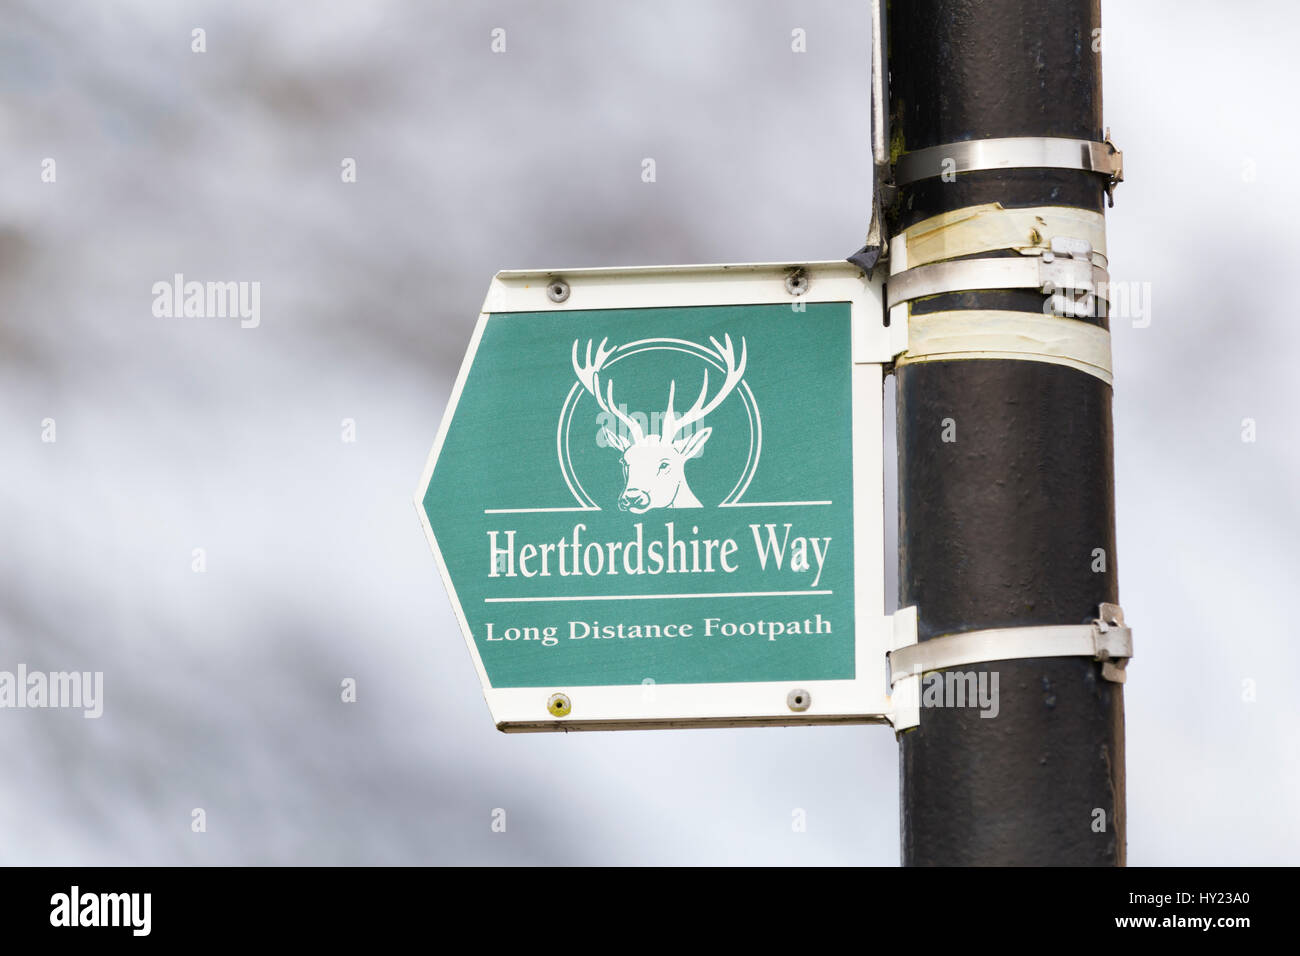 Hertfordshire Way signage. Stock Photo